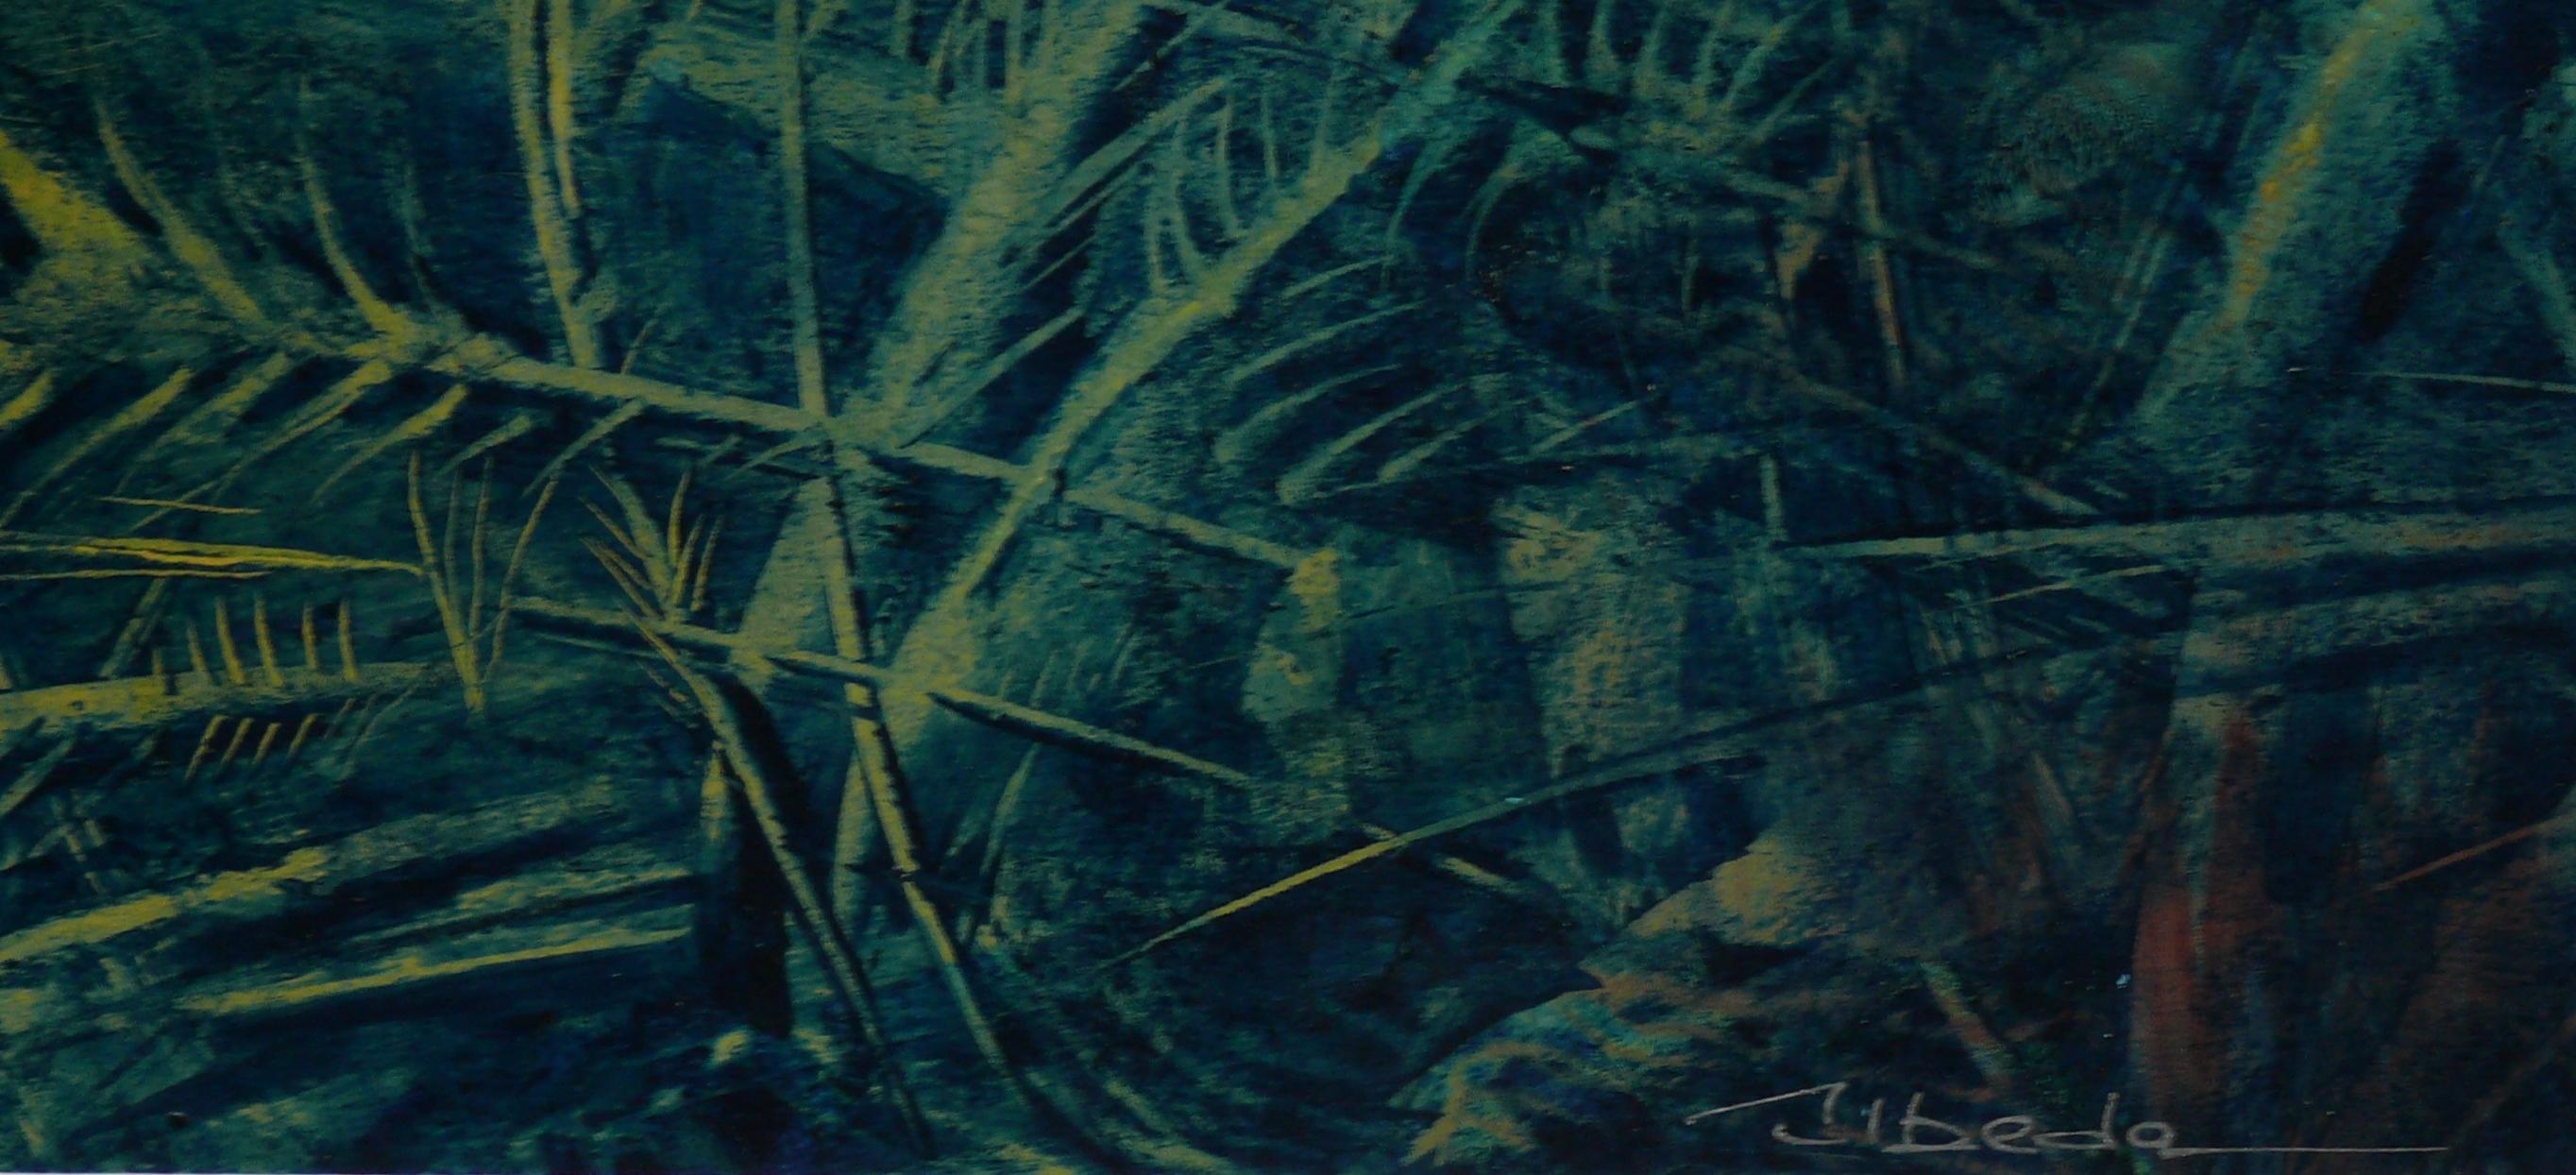 Under The Sea Series Nº 3. Úbeda. Oil fantasy underwater landscape. - Painting by Ángel Luis Úbeda